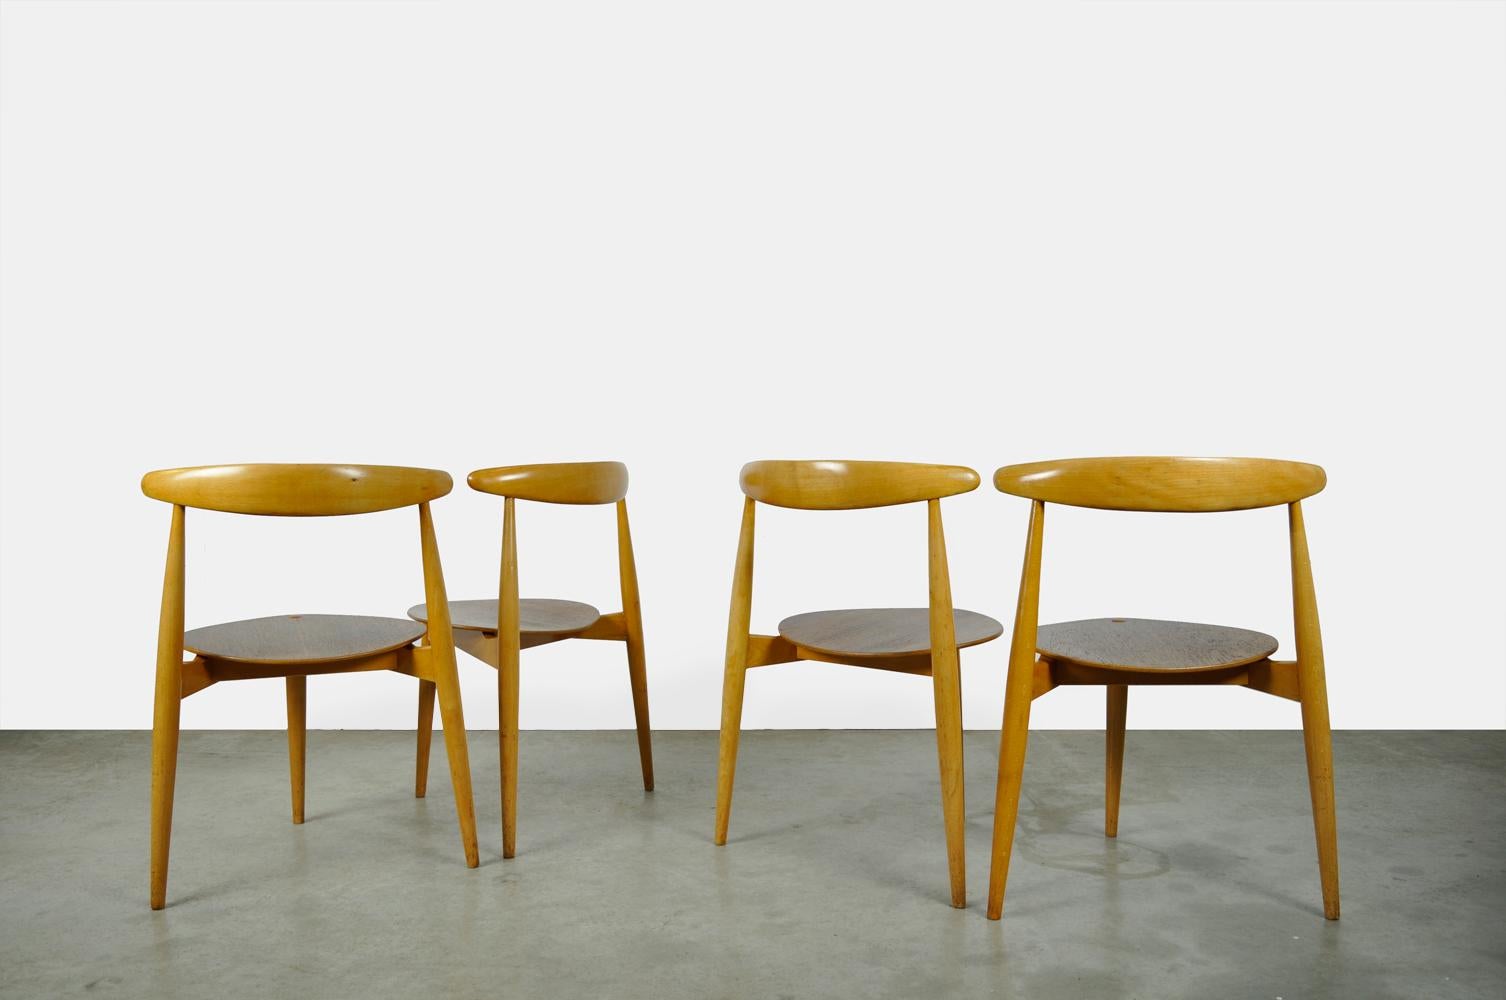 Magnifique ensemble de 4 chaises de table de salle à manger, conçu par Hans J. Wegner et produit par Fritz Hansen, Danemark années 1950. La construction triangulaire des chaises spéciales est une combinaison de bois de hêtre et de teck. Le cadre est